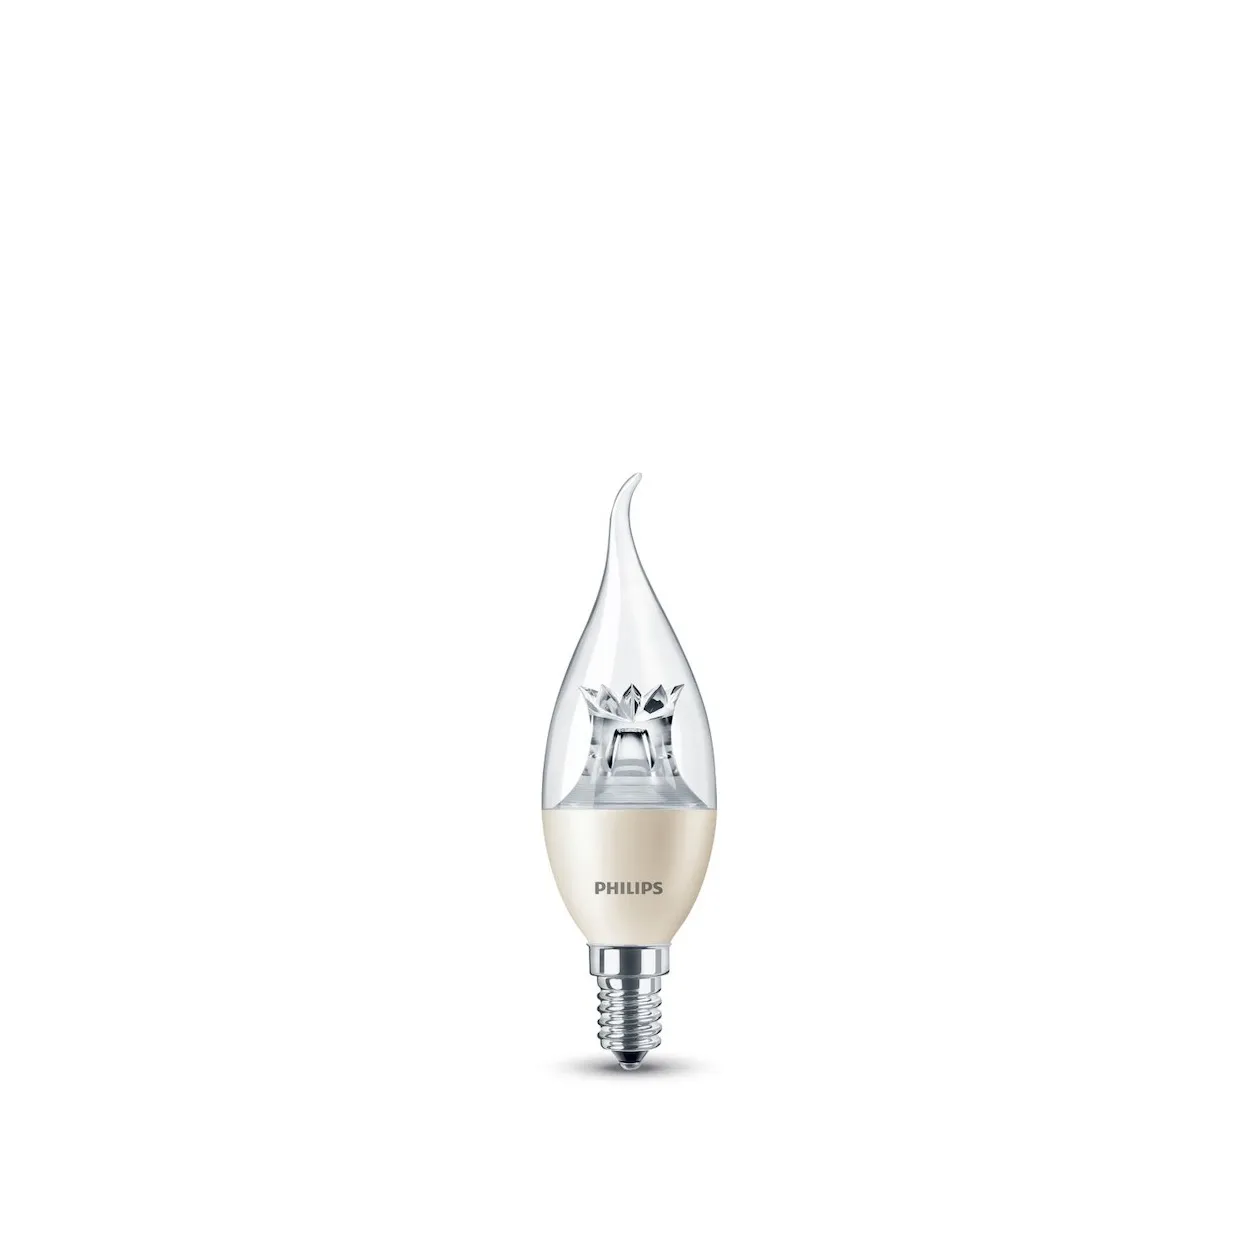 Philips LED lamp E14 4W 250Lm druipkaars helder dimbaar